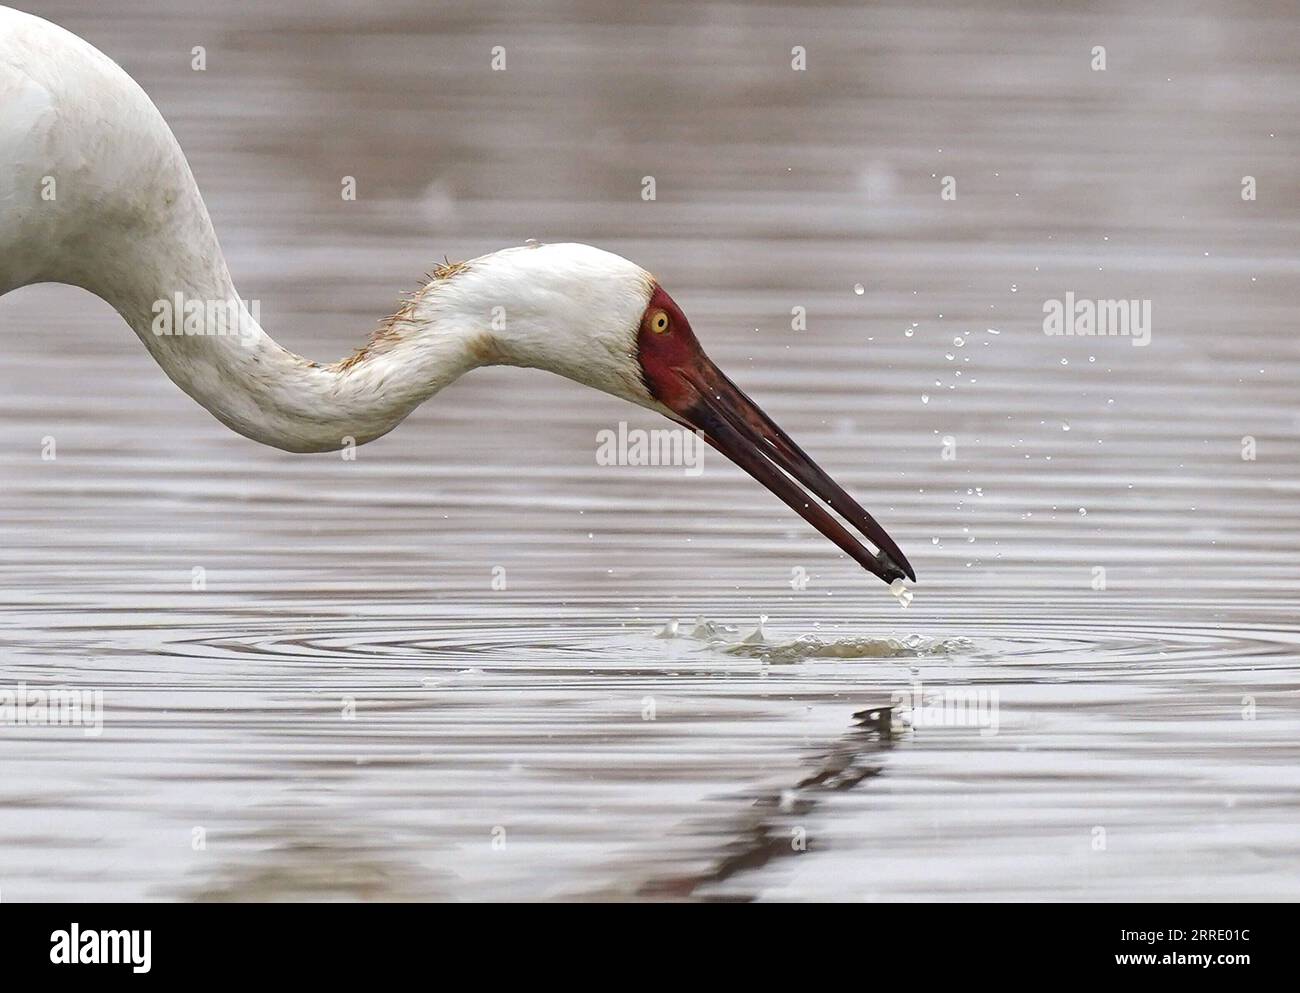 220115 -- NANCHANG, 15. Januar 2022 -- Ein weißer Kran ernährt sich im Nanchang Five Stars Siberian Cranes Sanctuary am Poyang Lake in Nanchang, ostchinesische Provinz Jiangxi, 12. Januar 2022. Der Poyang Lake, der größte Süßwassersee des Landes, ist ein wichtiger Überwinterungsort für Zugvögel. Um die Futtervorräte für die Vögel zu erhöhen, erließ die lokale Regierung des Yugan County 2021 eine Entschädigungspolitik für Landwirte und reservierte Reis für Zugvögel. Im fünf-Sterne-Sibirischen Kranichheiligtum Nanchang am Poyang-See wurden Kraniche auf einem Lotussee zum Essen angezogen. Der Teich, ini Stockfoto